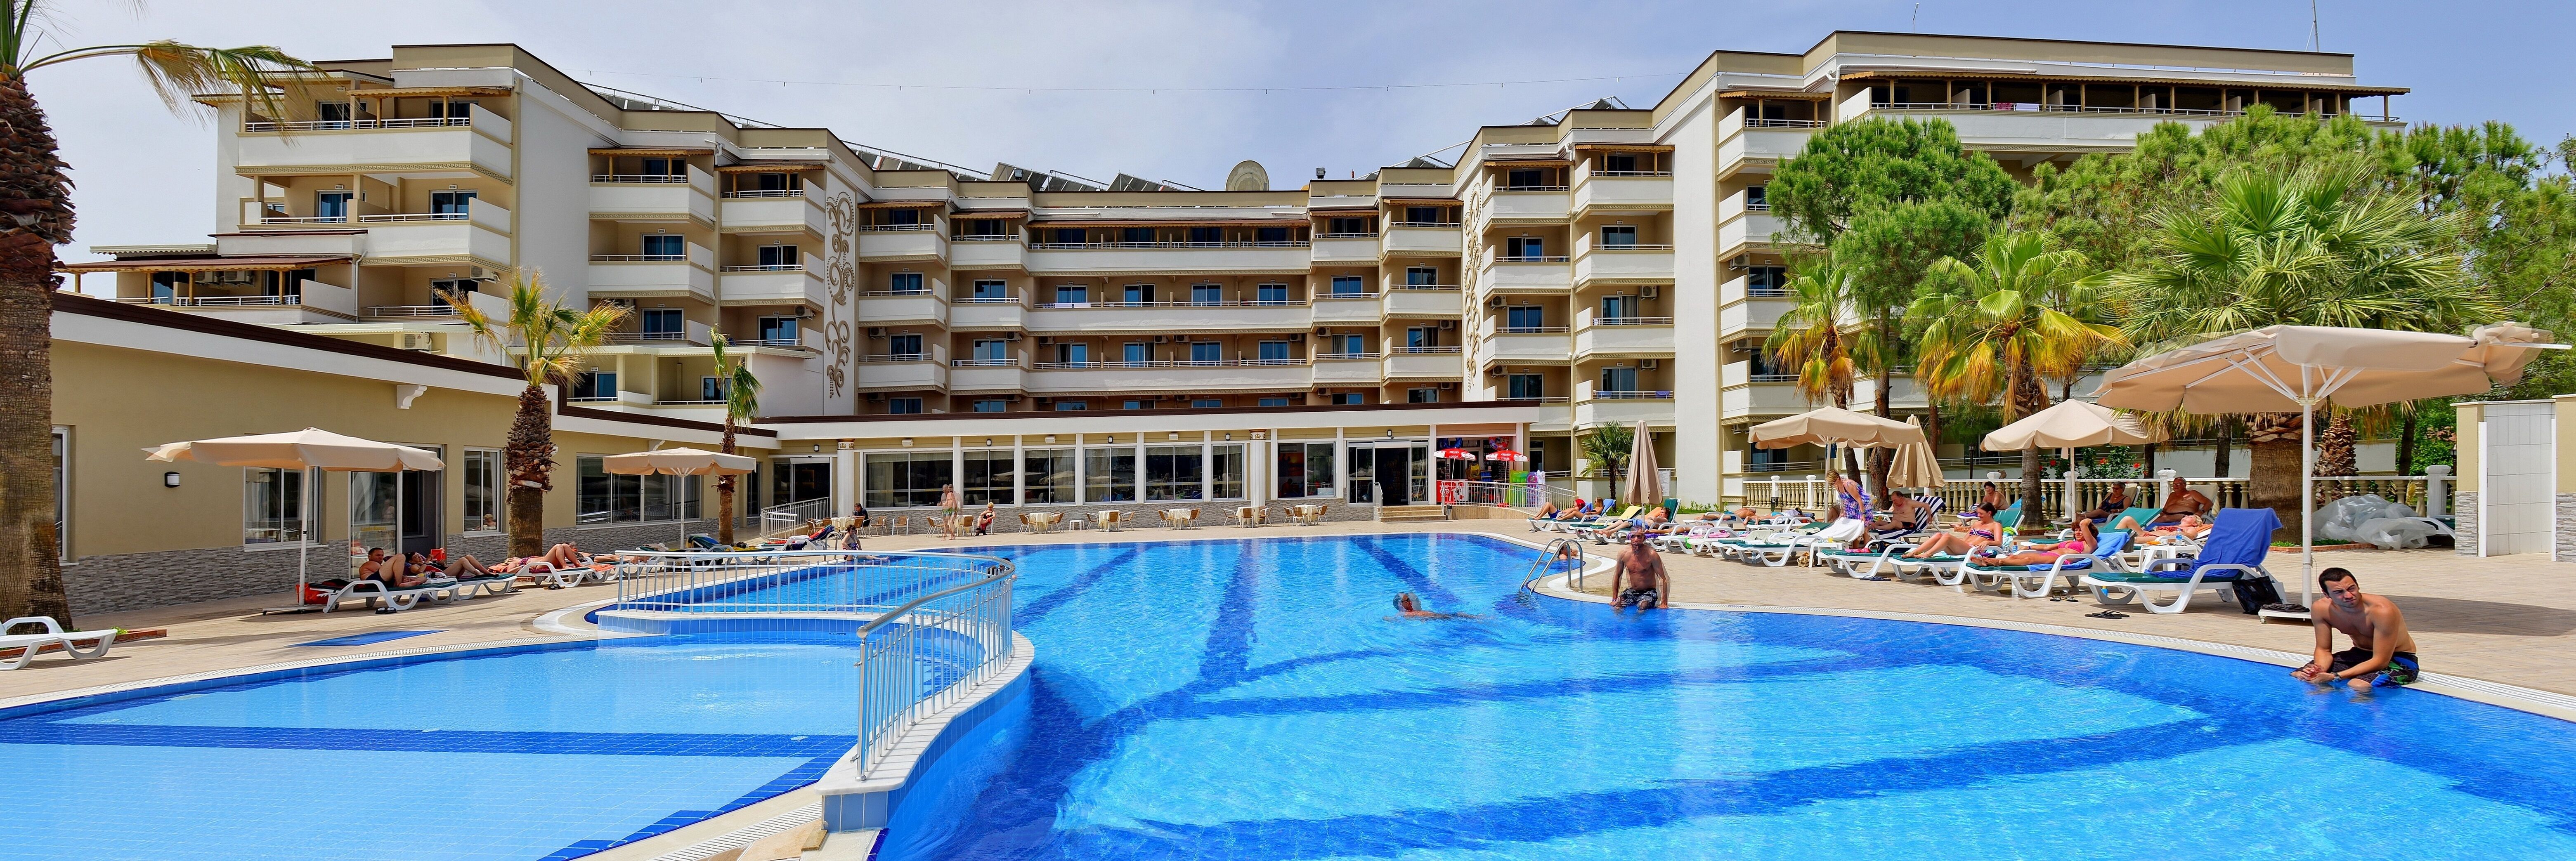 linda-resort-hotel